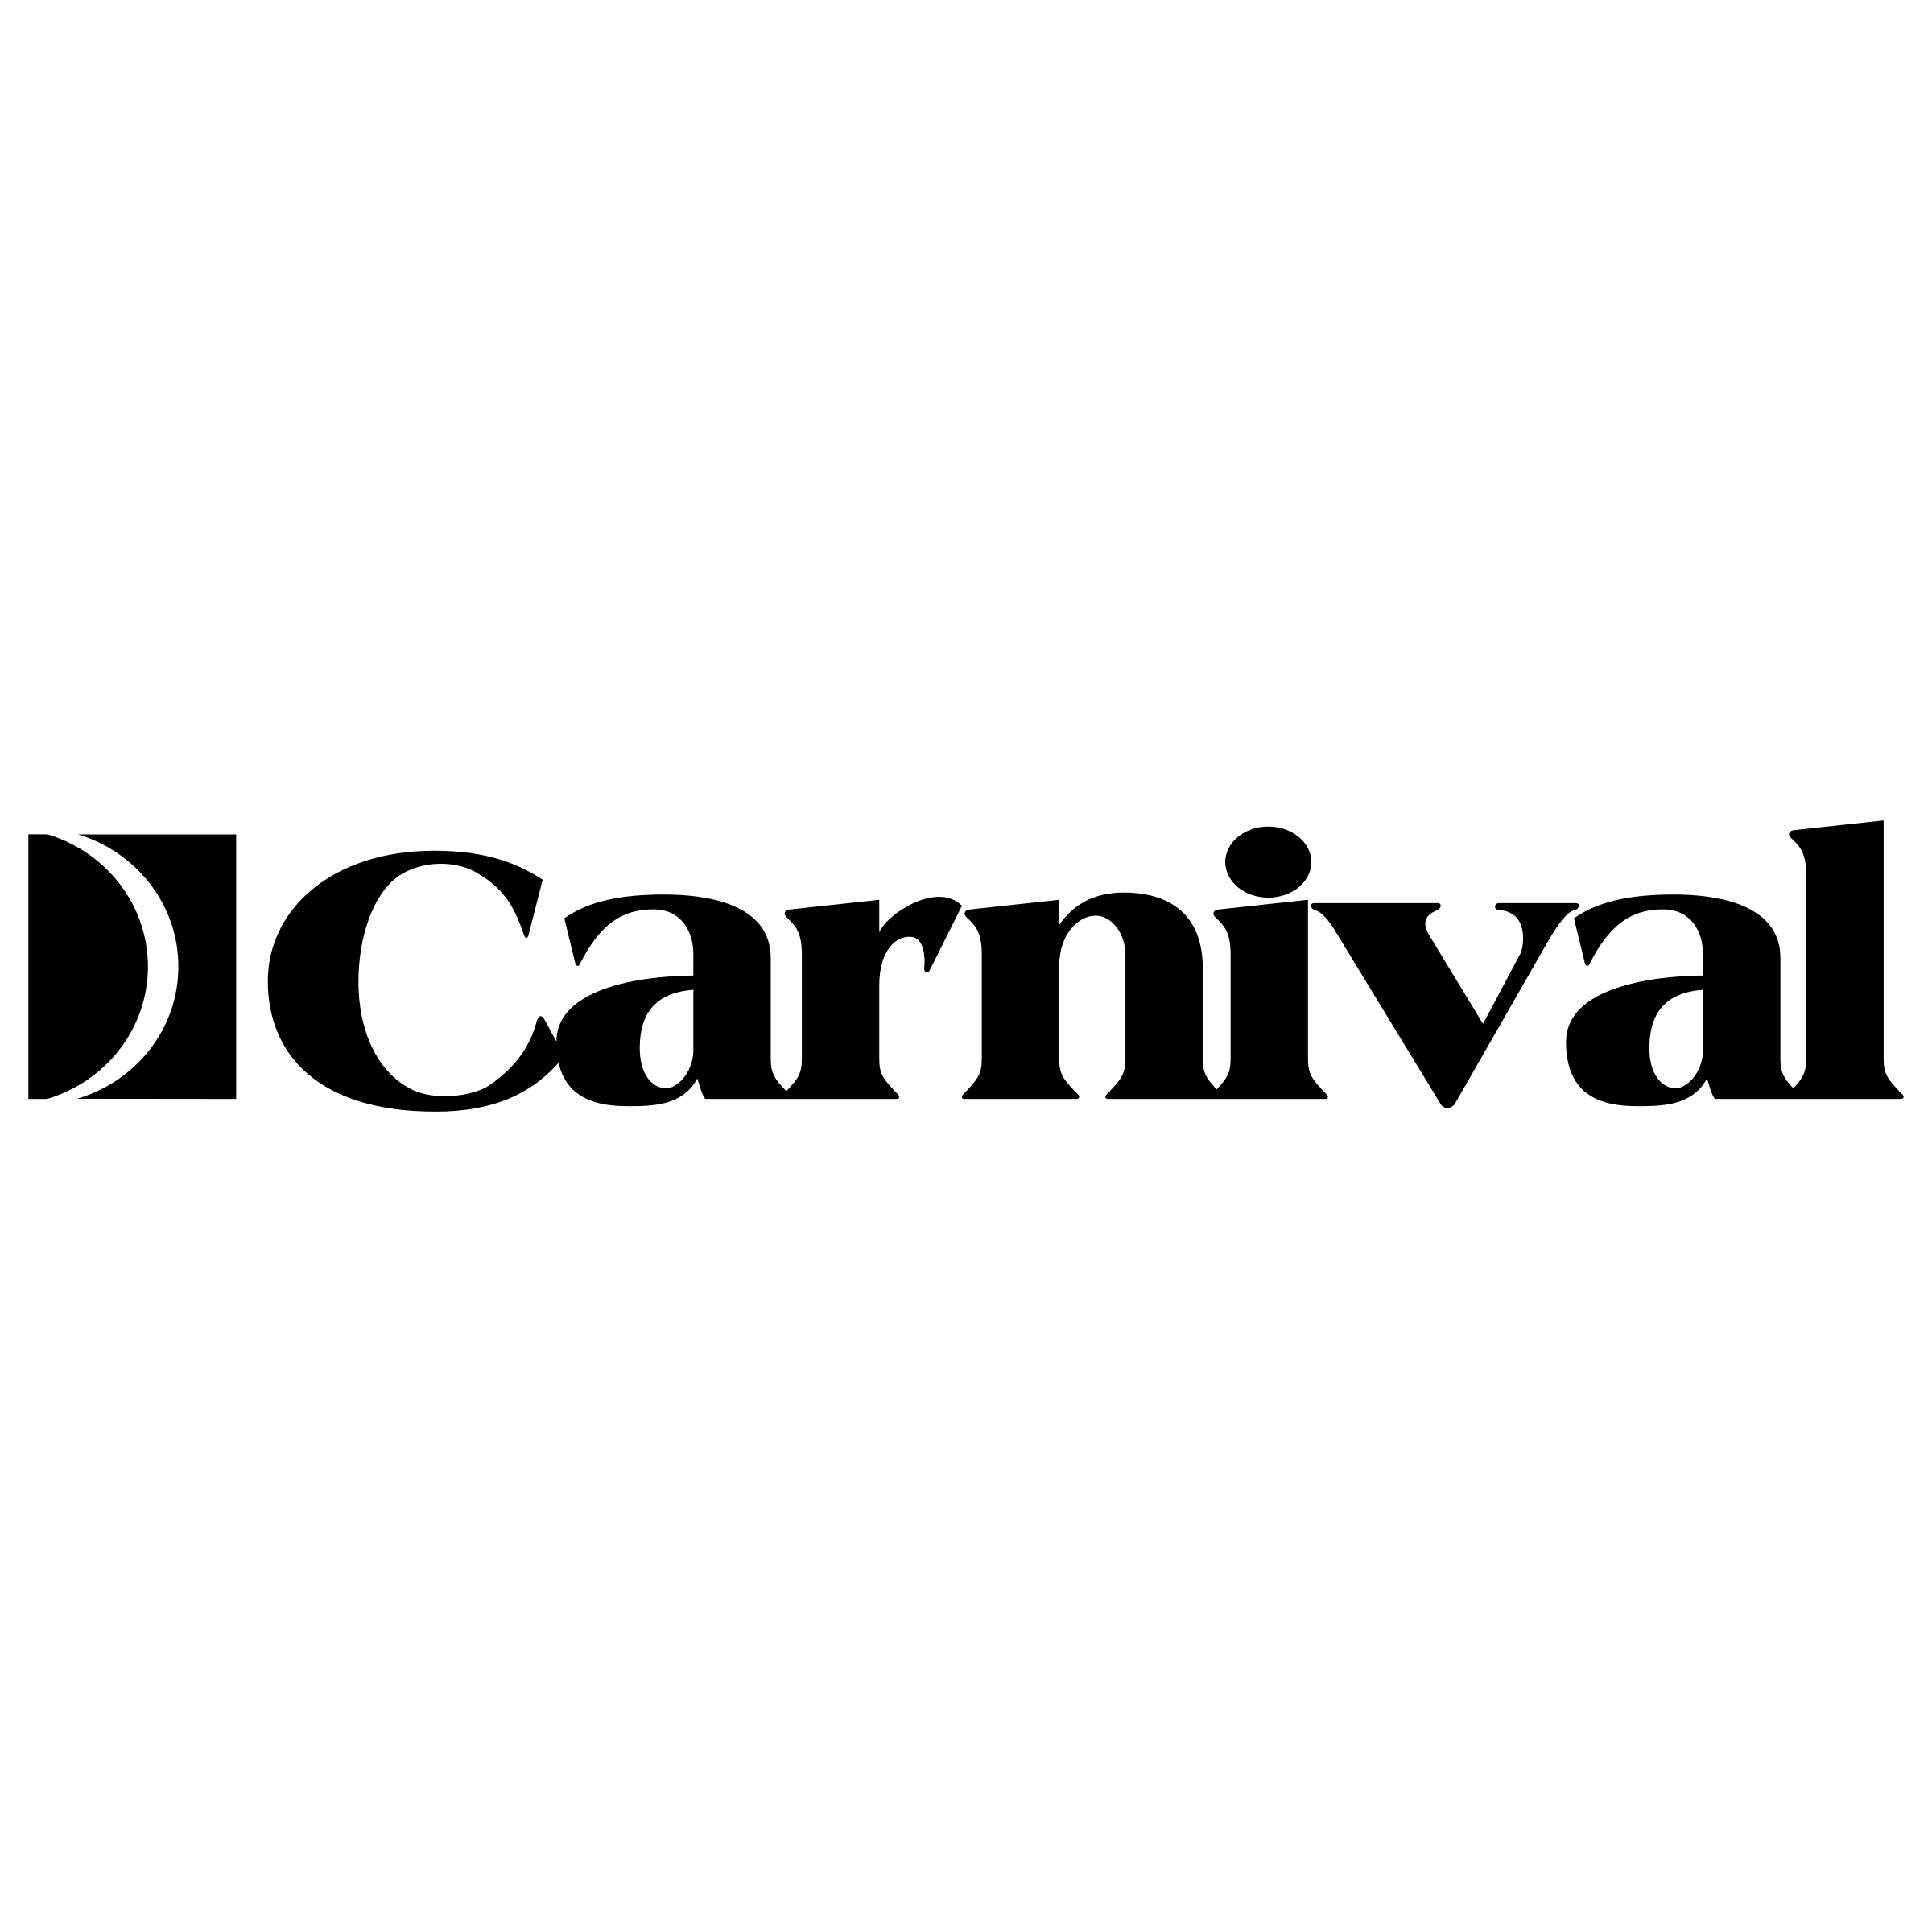 Carnival Logo - Carnival Logo PNG Transparent & SVG Vector